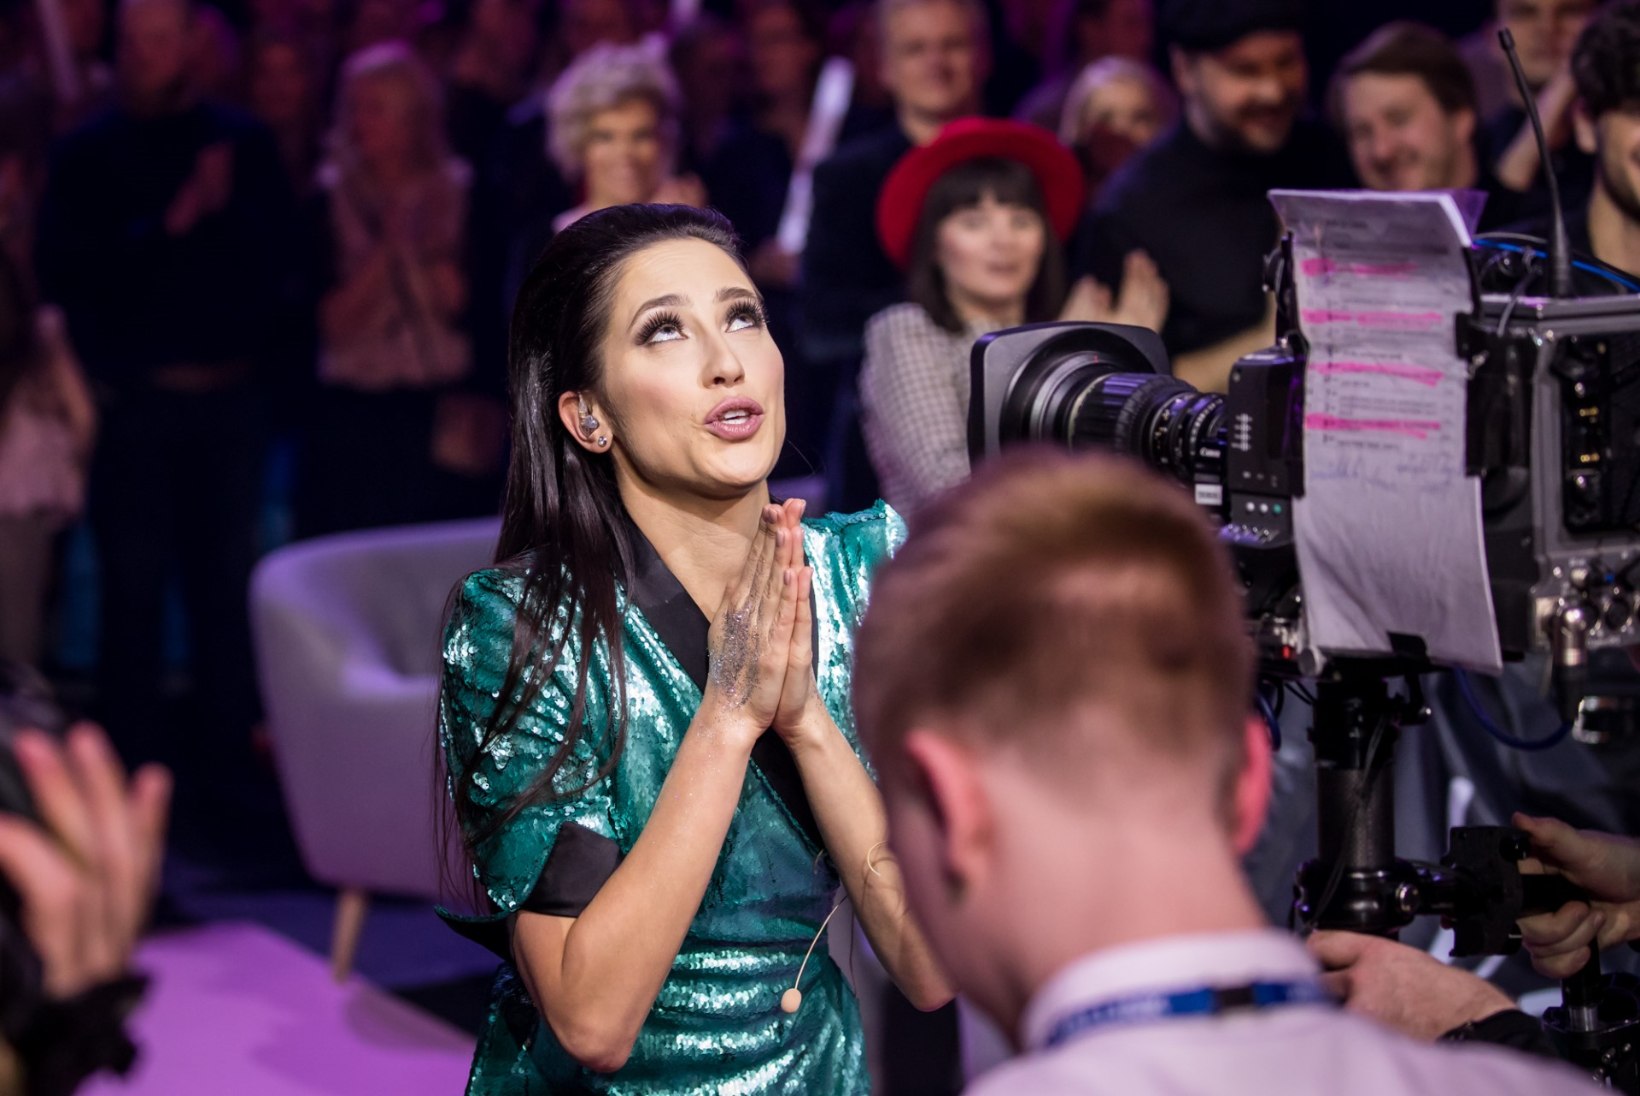 FOTOD | Elina Nechayeva emotsioonid pärast "Eesti laulu" võitu